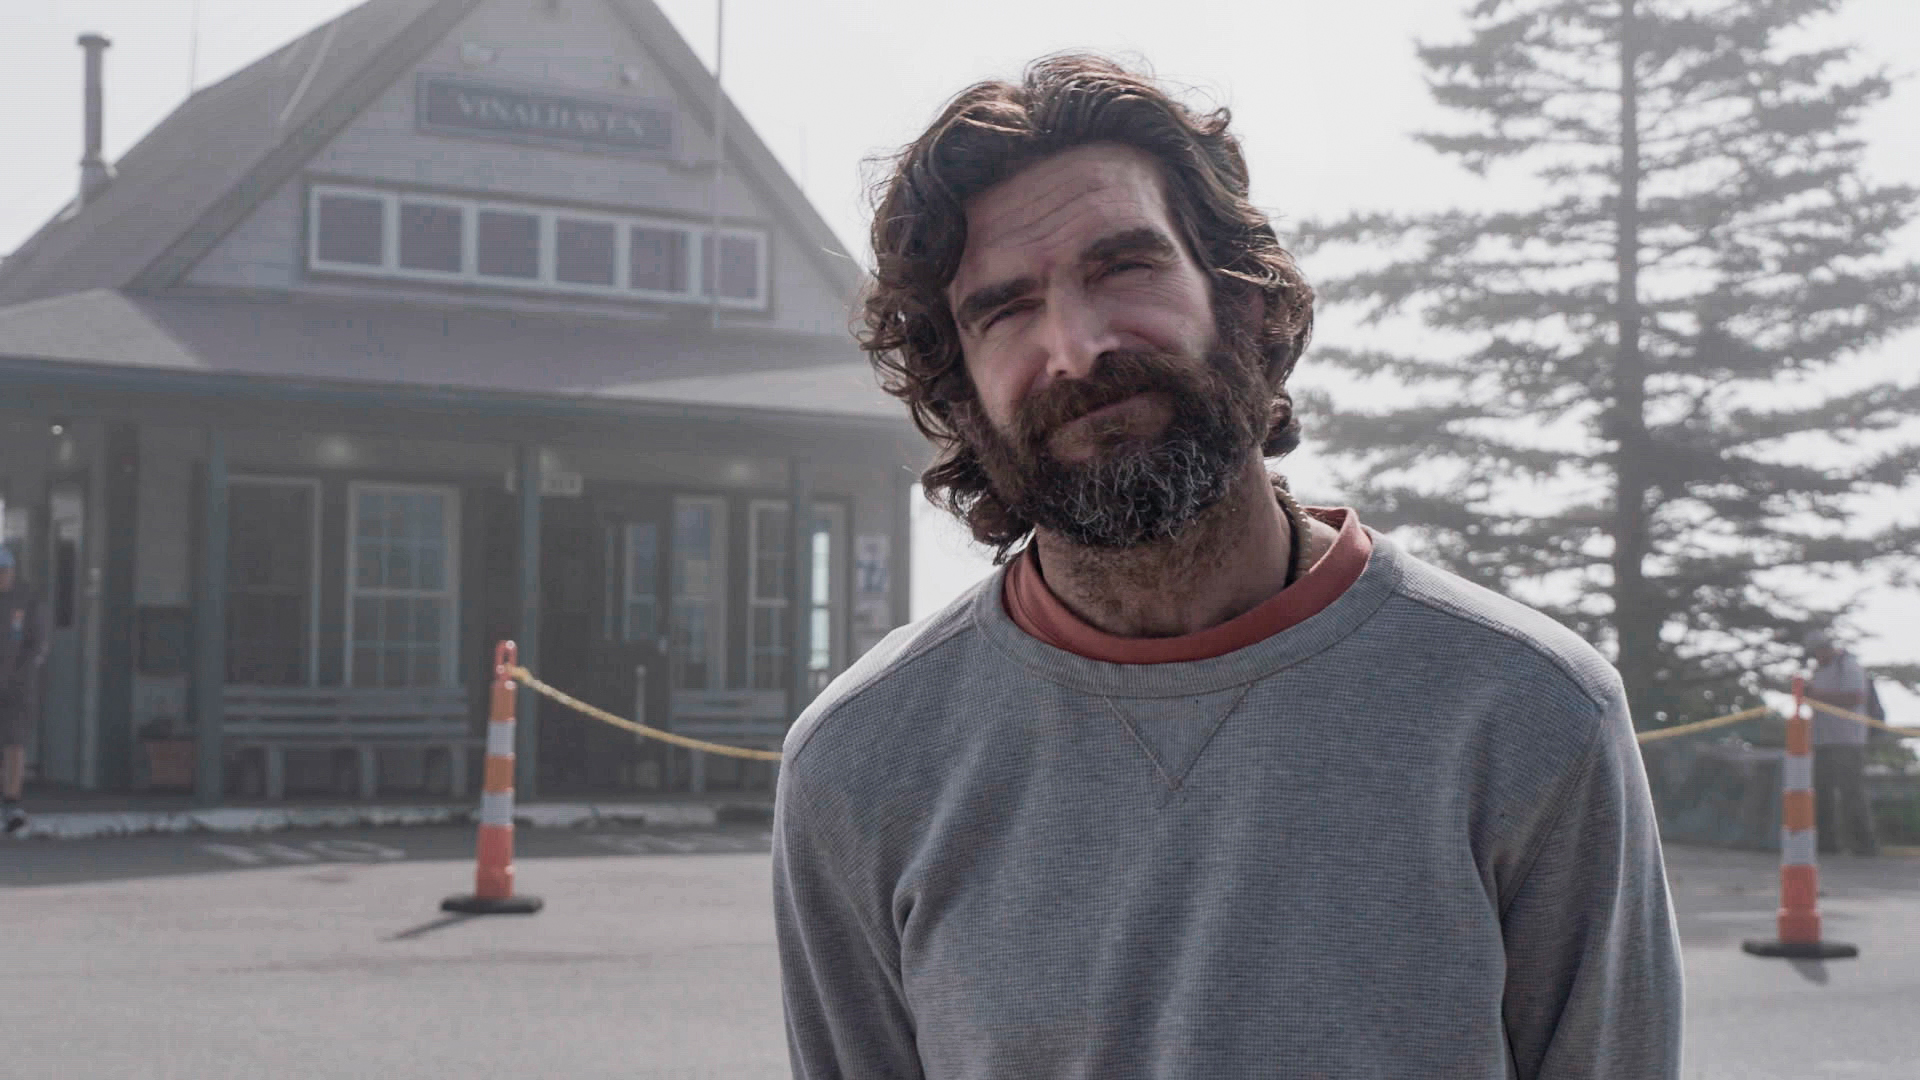 True Crime Story: It Couldn't Happen Here Season 2 Episode 6 - Vinalhaven, Maine